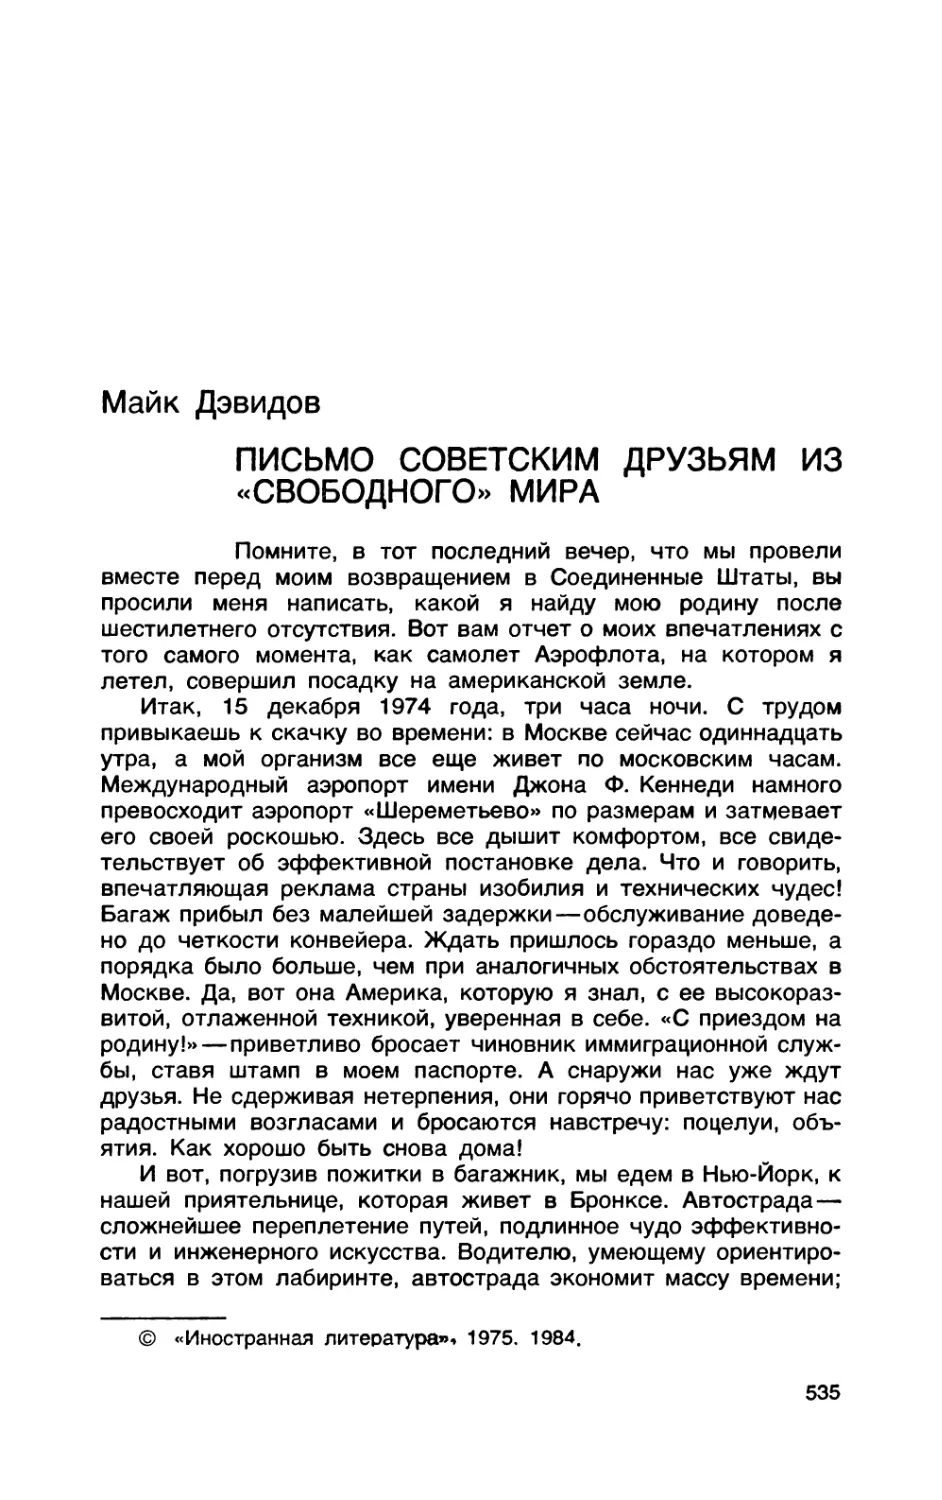 МАЙК  ДЭВИДОВ.  Письмо  советским  друзьям  из  «свободного»  мира